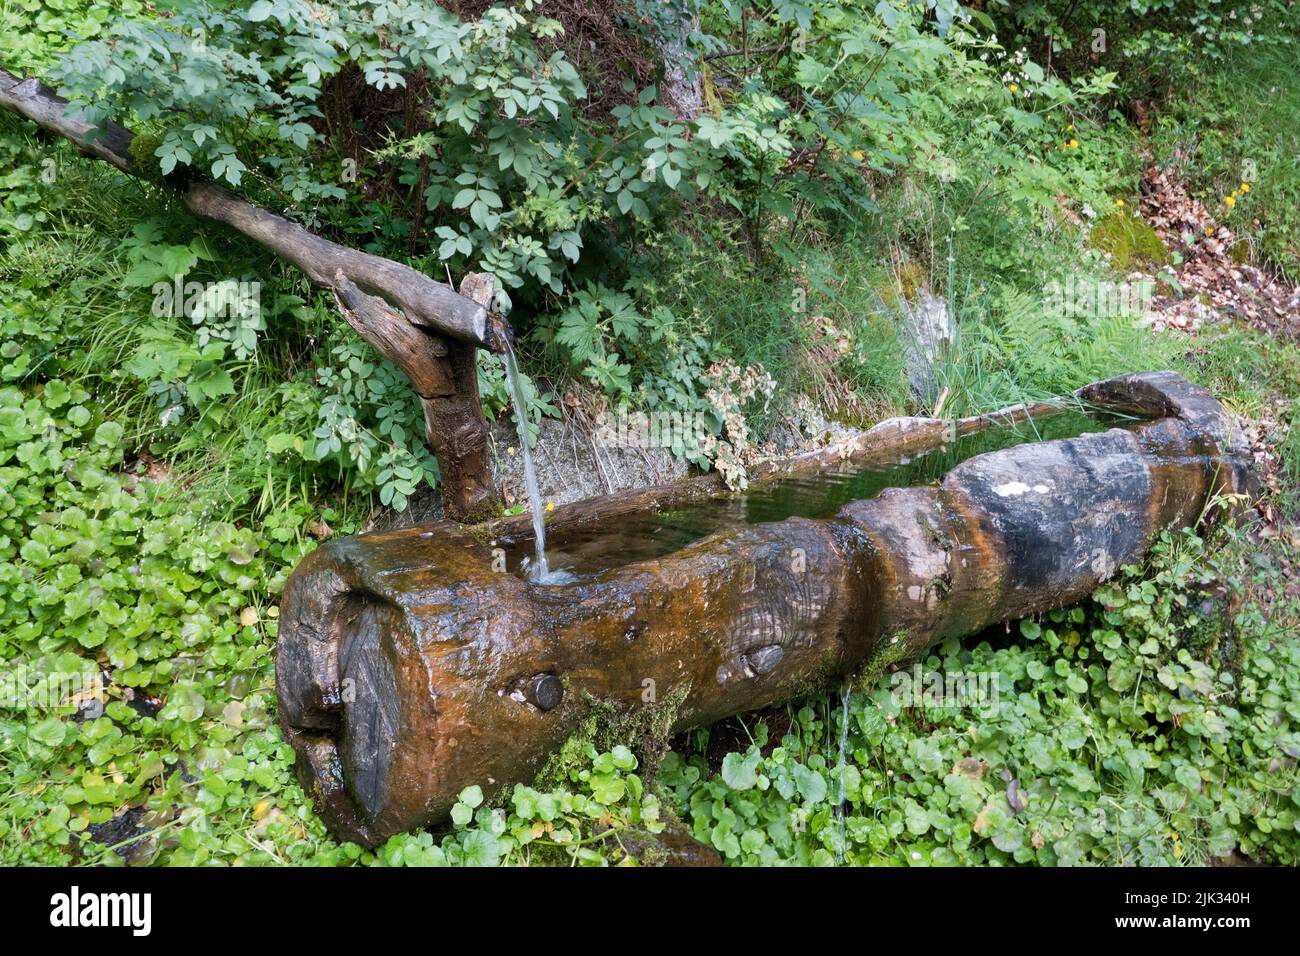 Bestiaux de bétail remplis d'eau fraîche et coulant, sculptés dans un tronc d'arbre Banque D'Images